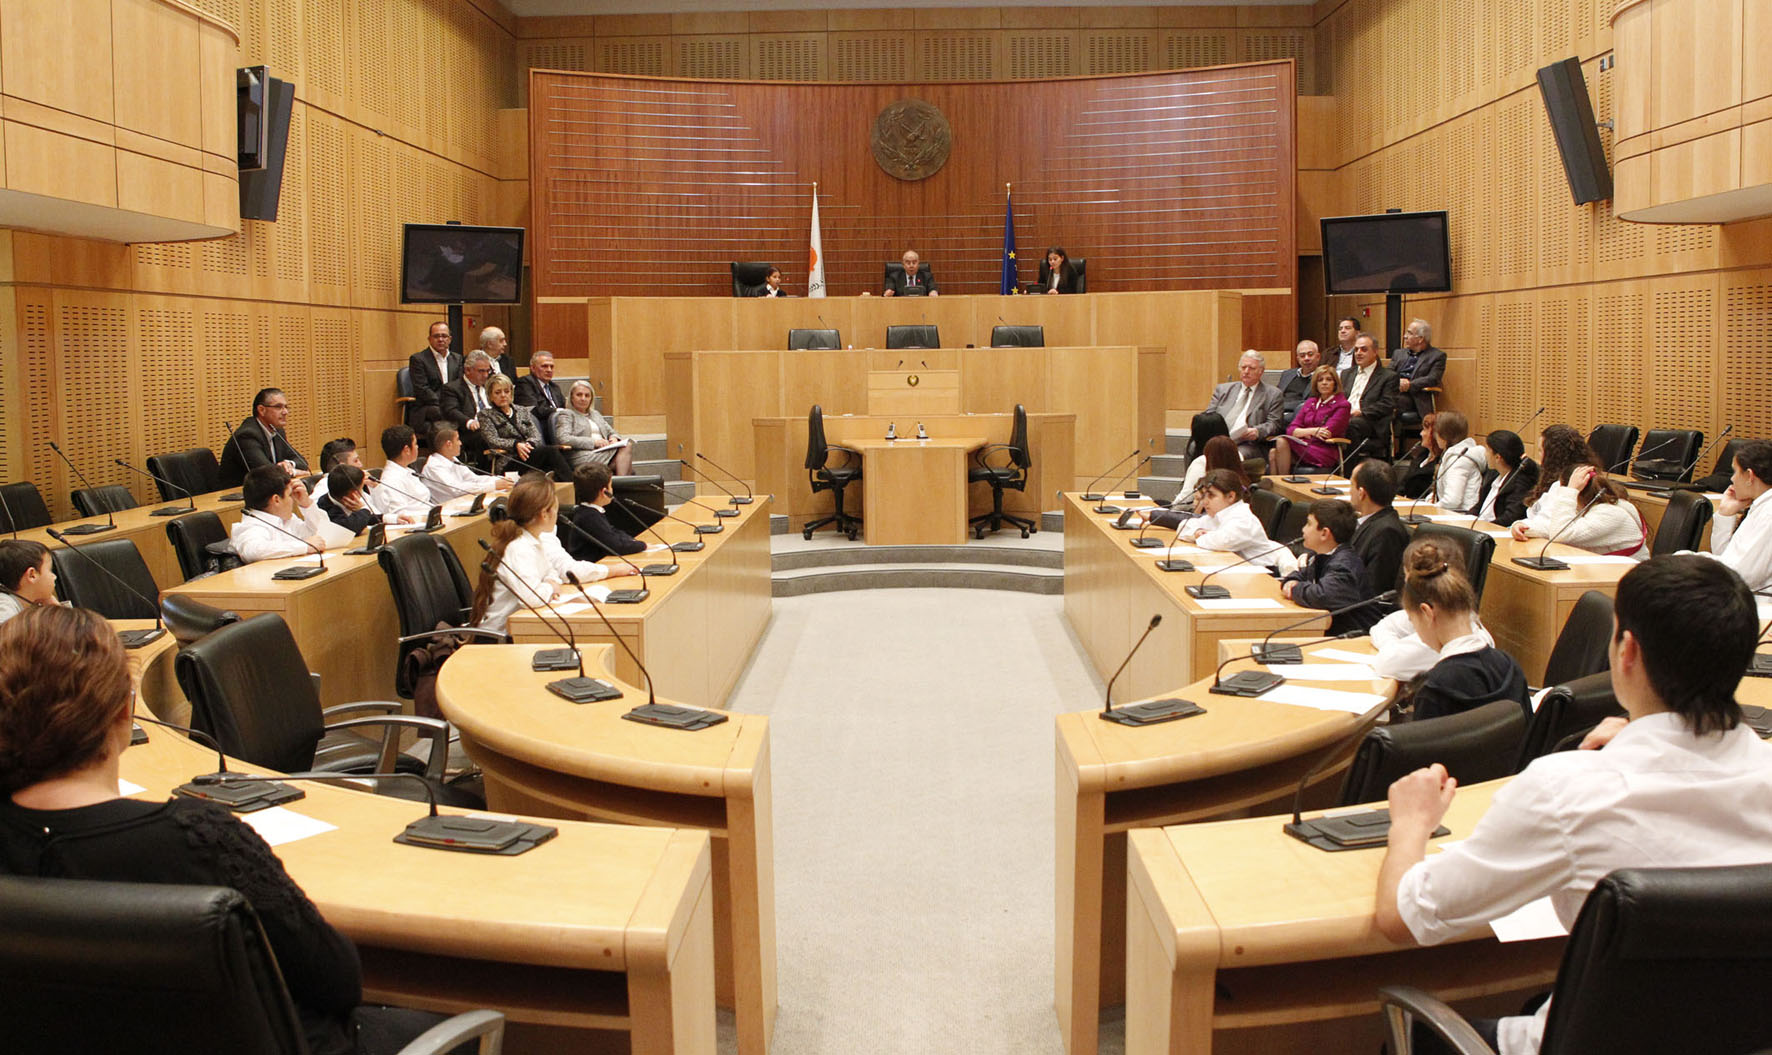 Φιλοξενία των εγκλωβισμένων μαθητών του Ριζοκαρπάσου στη Βουλή - 26/11/2014